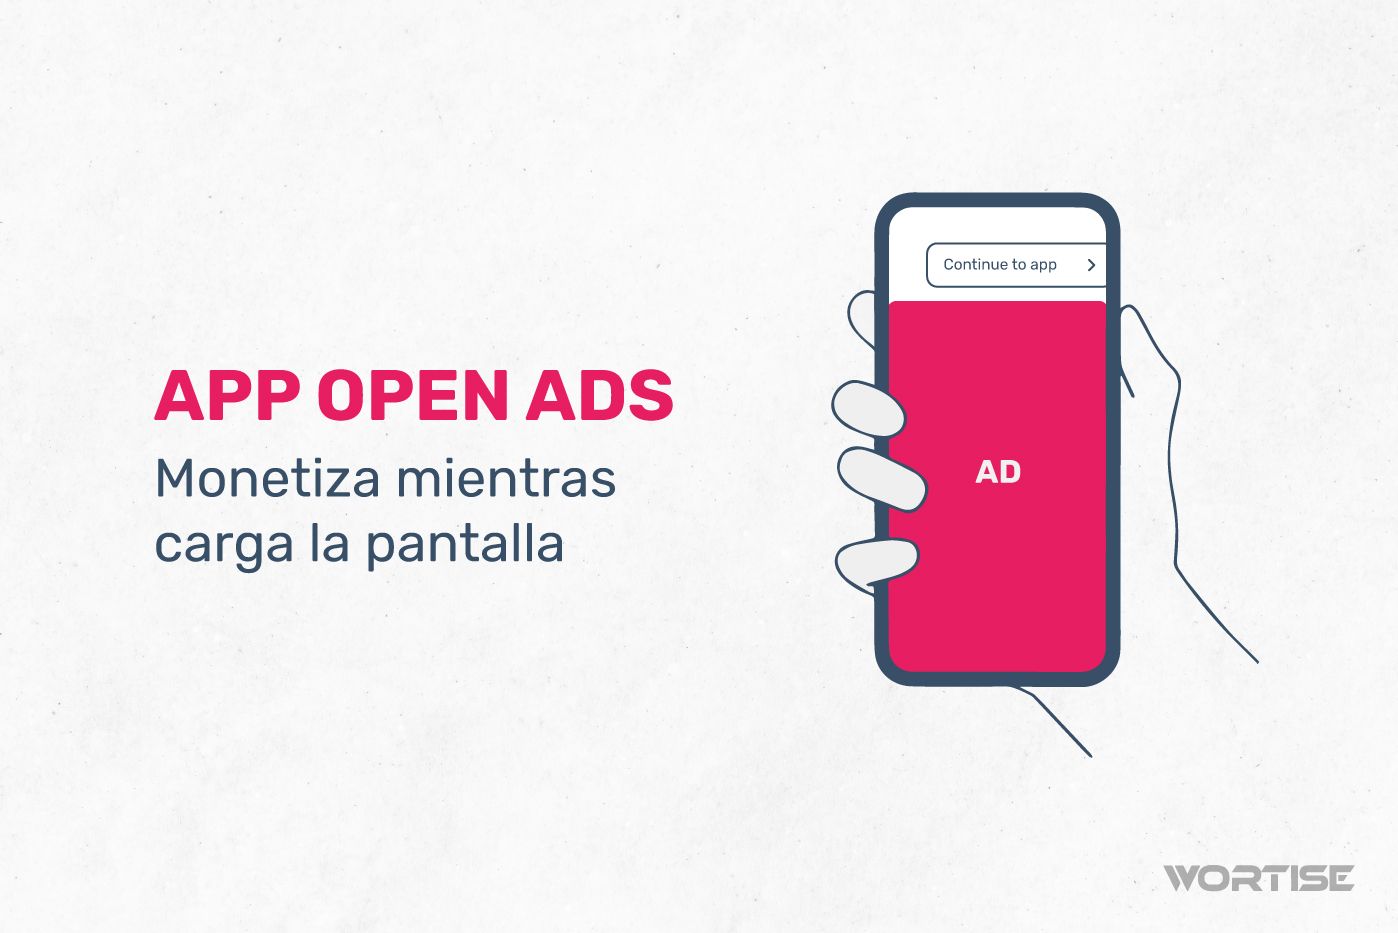 App Open Ads: Monetiza tu app mientras carga la pantalla